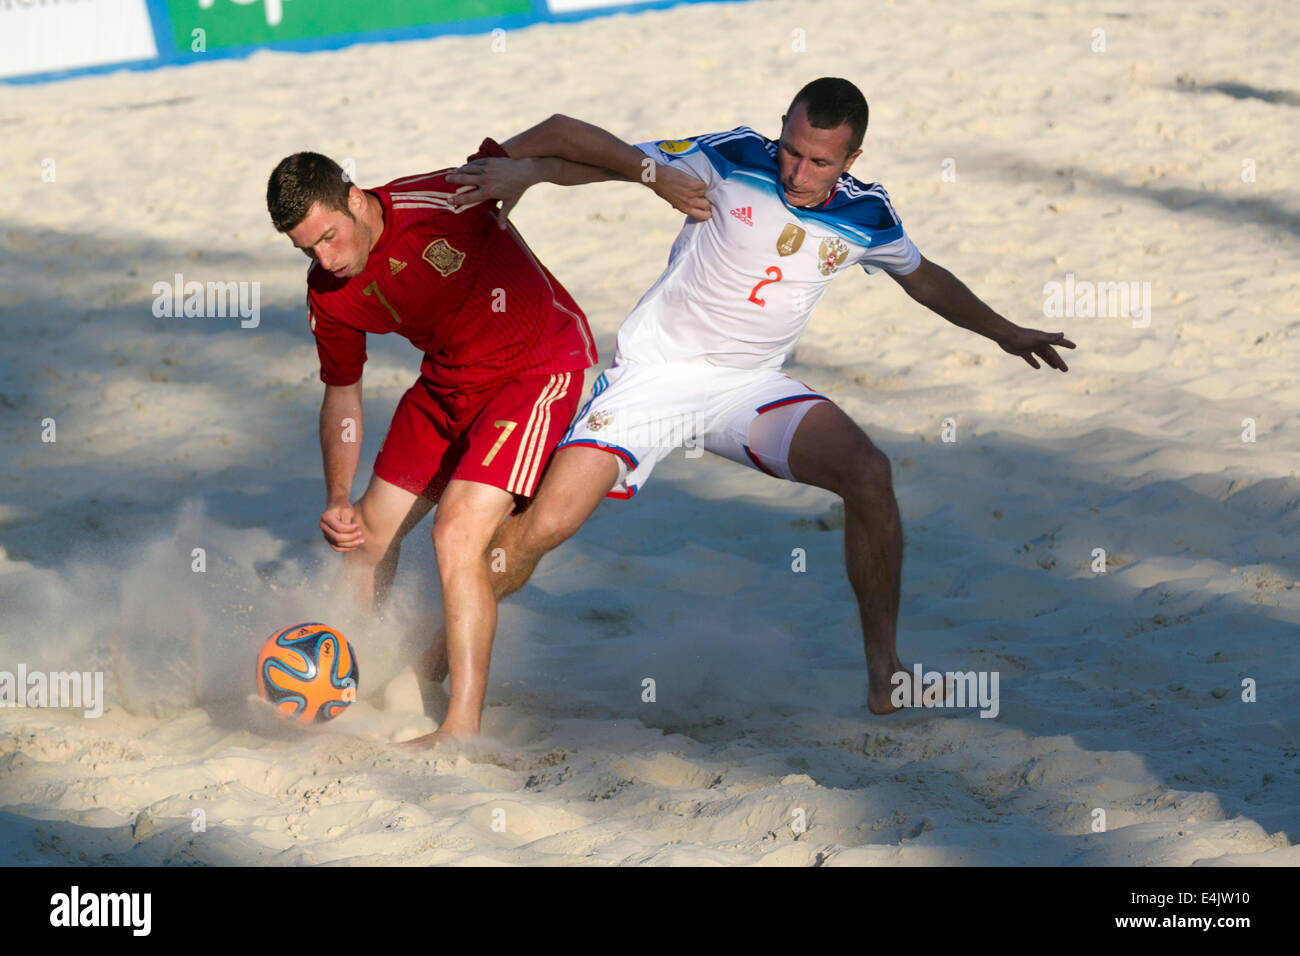 Moscú, Rusia. El 13 de julio de 2014. Euro Beach Soccer League torneo, etapa de Moscú. Juego entre Rusia y España Foto de stock